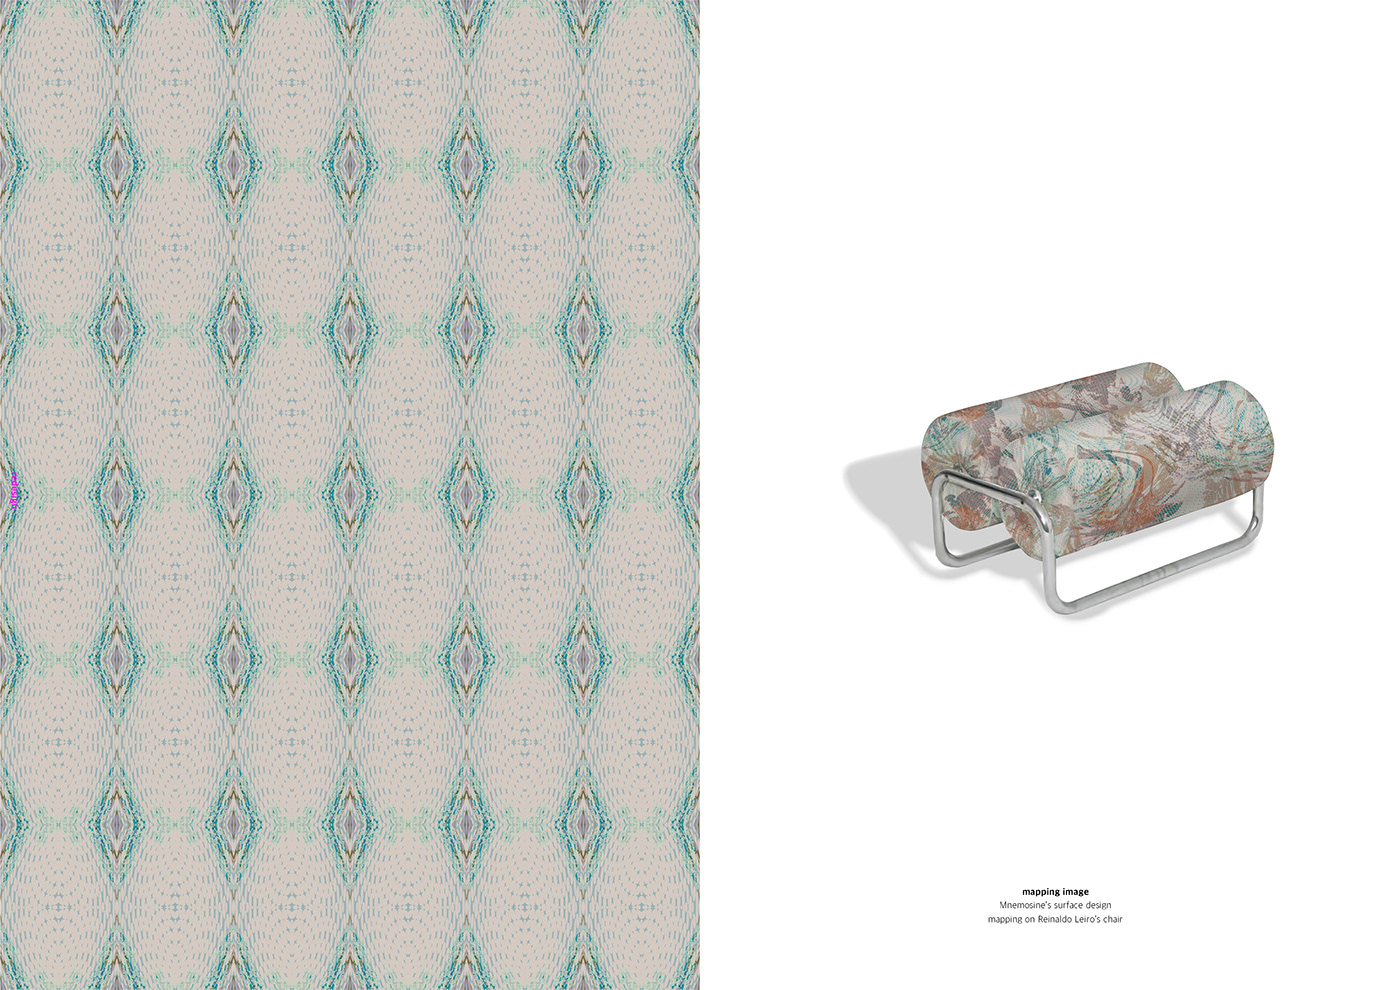 ceramic livingdesign metal pattern surface design textile Bookdesign portfolio